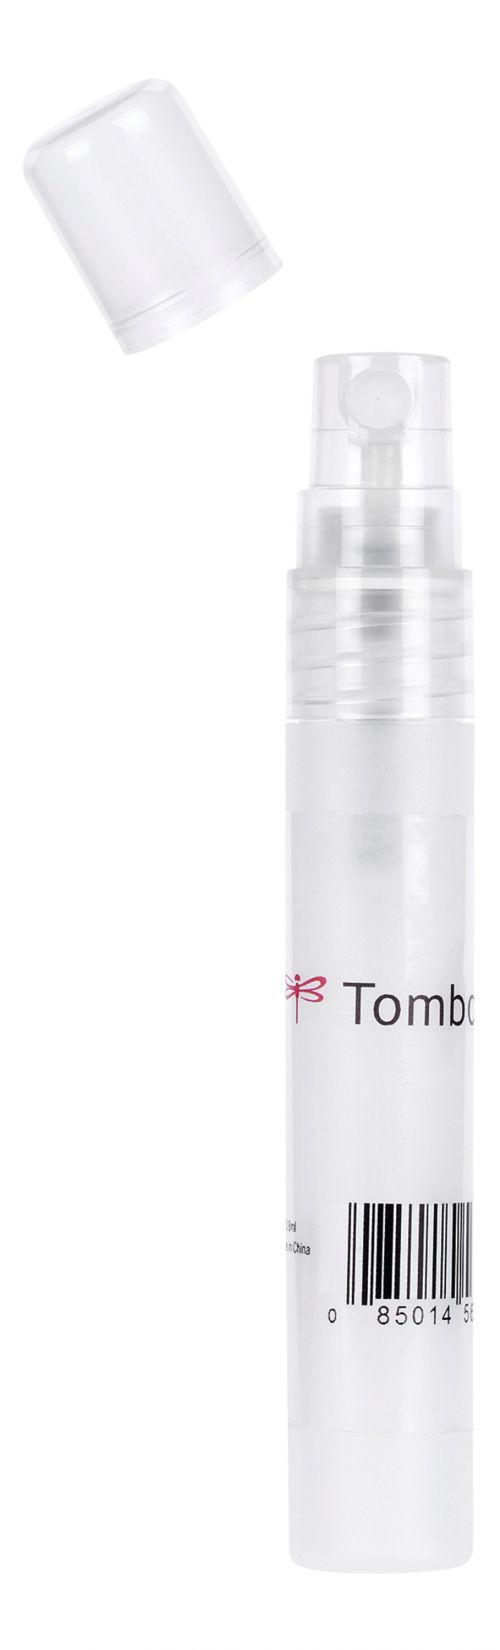 Tombow Blending Kit For Blending Water Based Brush Pens (Pack 4) - BLENDING-KIT Painting 48770TW